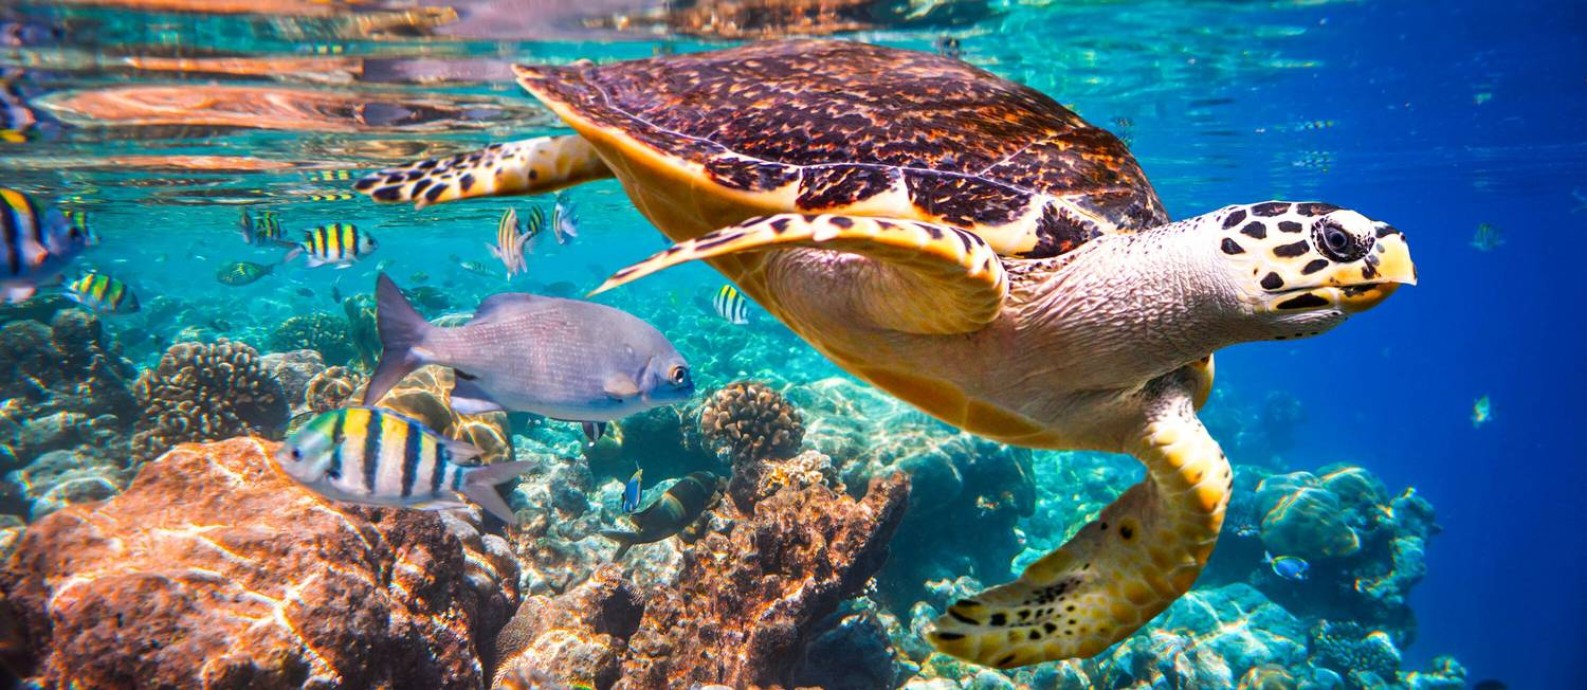 Tartaruga-de-pente, espécie ameaçada de extinção, flutua debaixo d'água em recife de corais no Oceano Índico Foto: Divulgação/Andrey Armyagov/Shutterstock.com